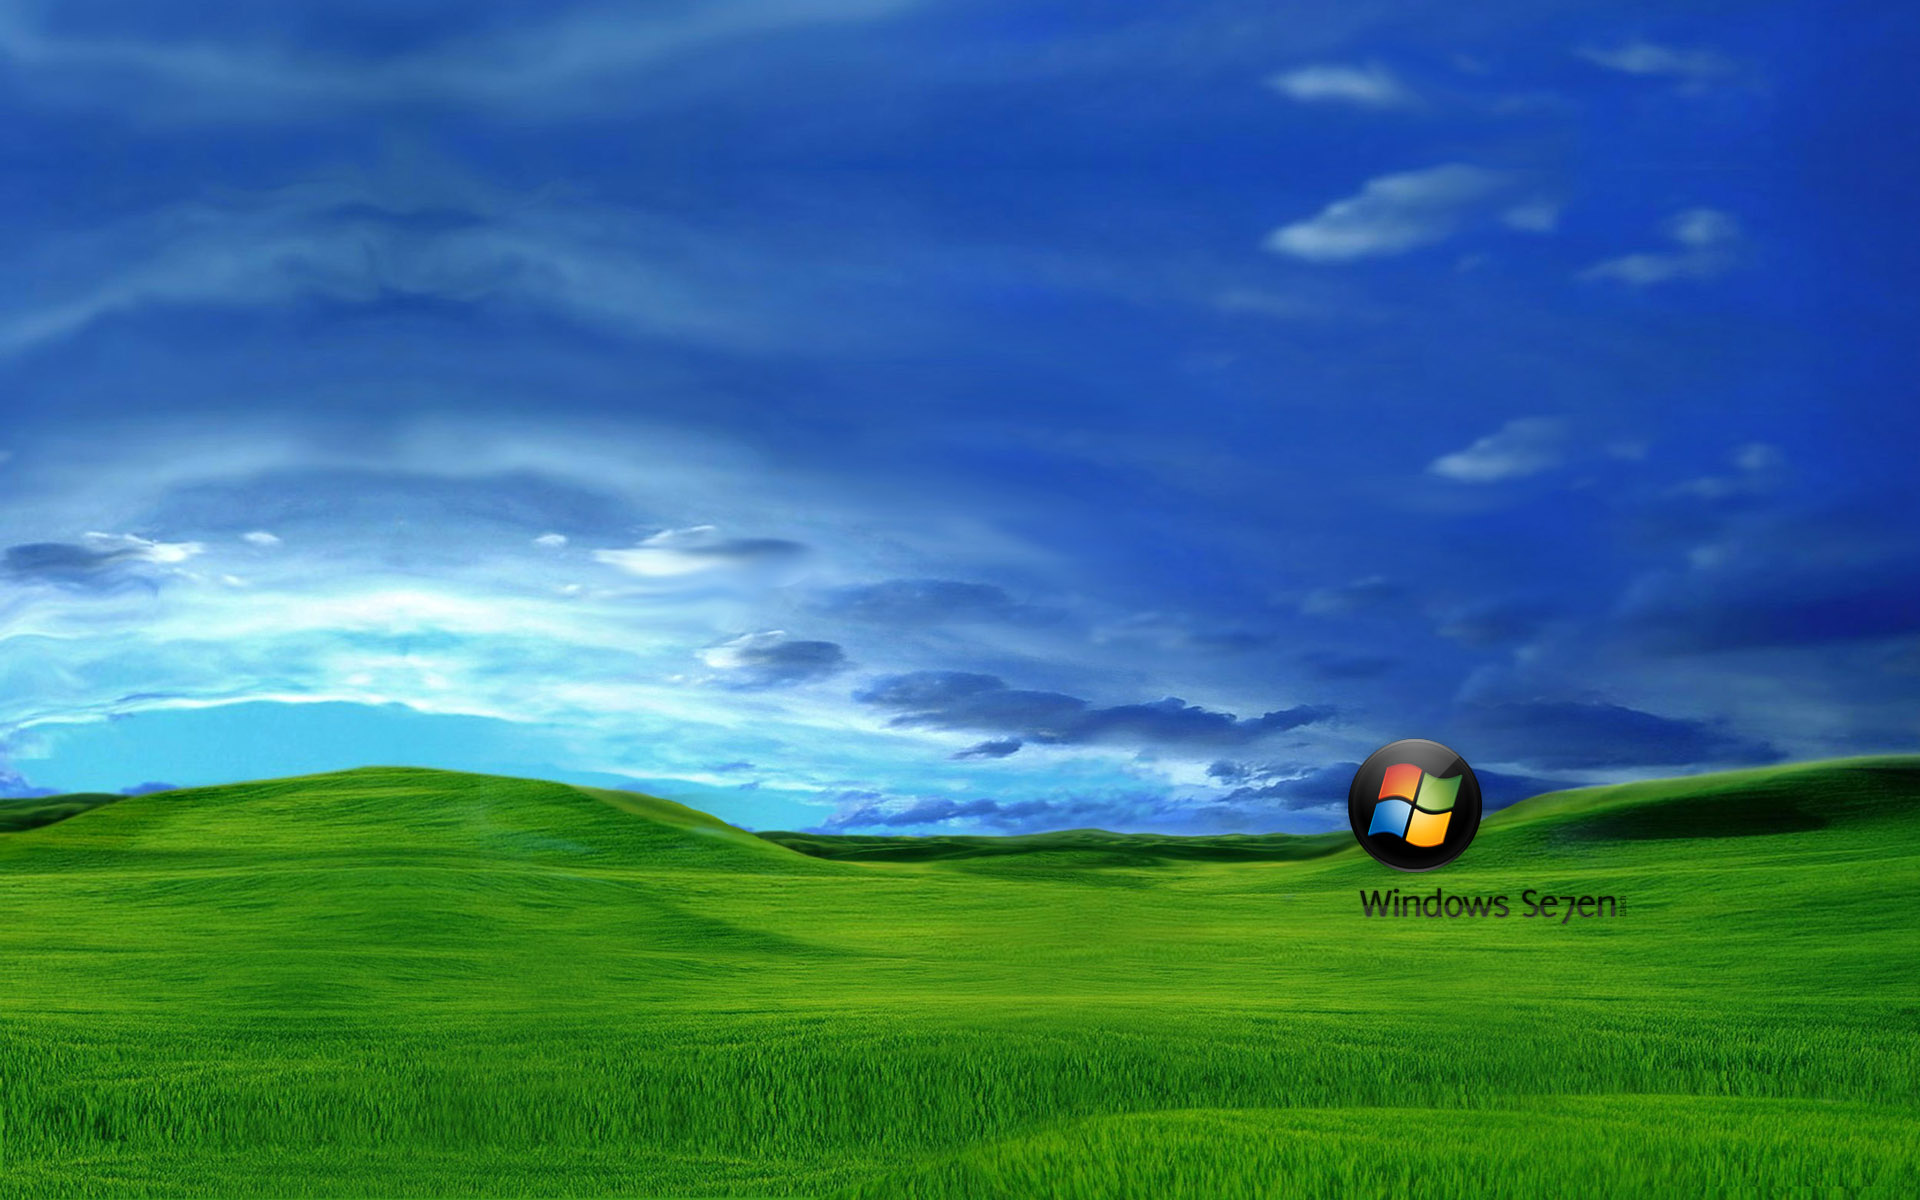 Download: Windows 7 Desktop Wallpapers.Zip | Cuzimage